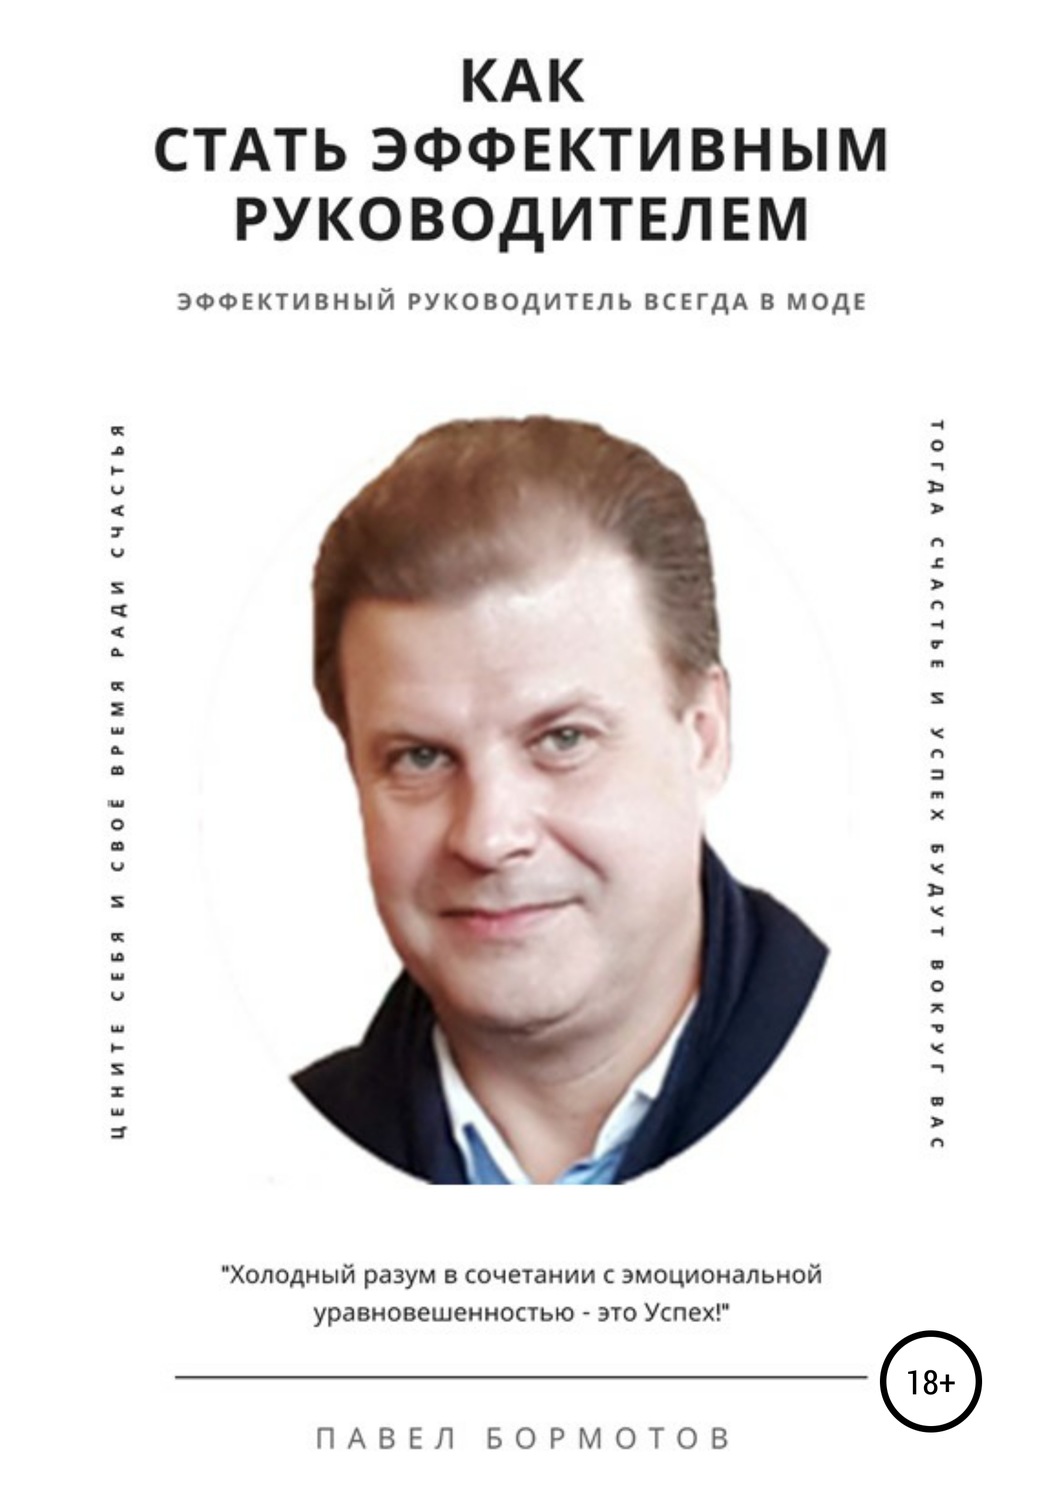 Обзор книги «Как стать эффективным руководителем», автор Павел Бормотов.